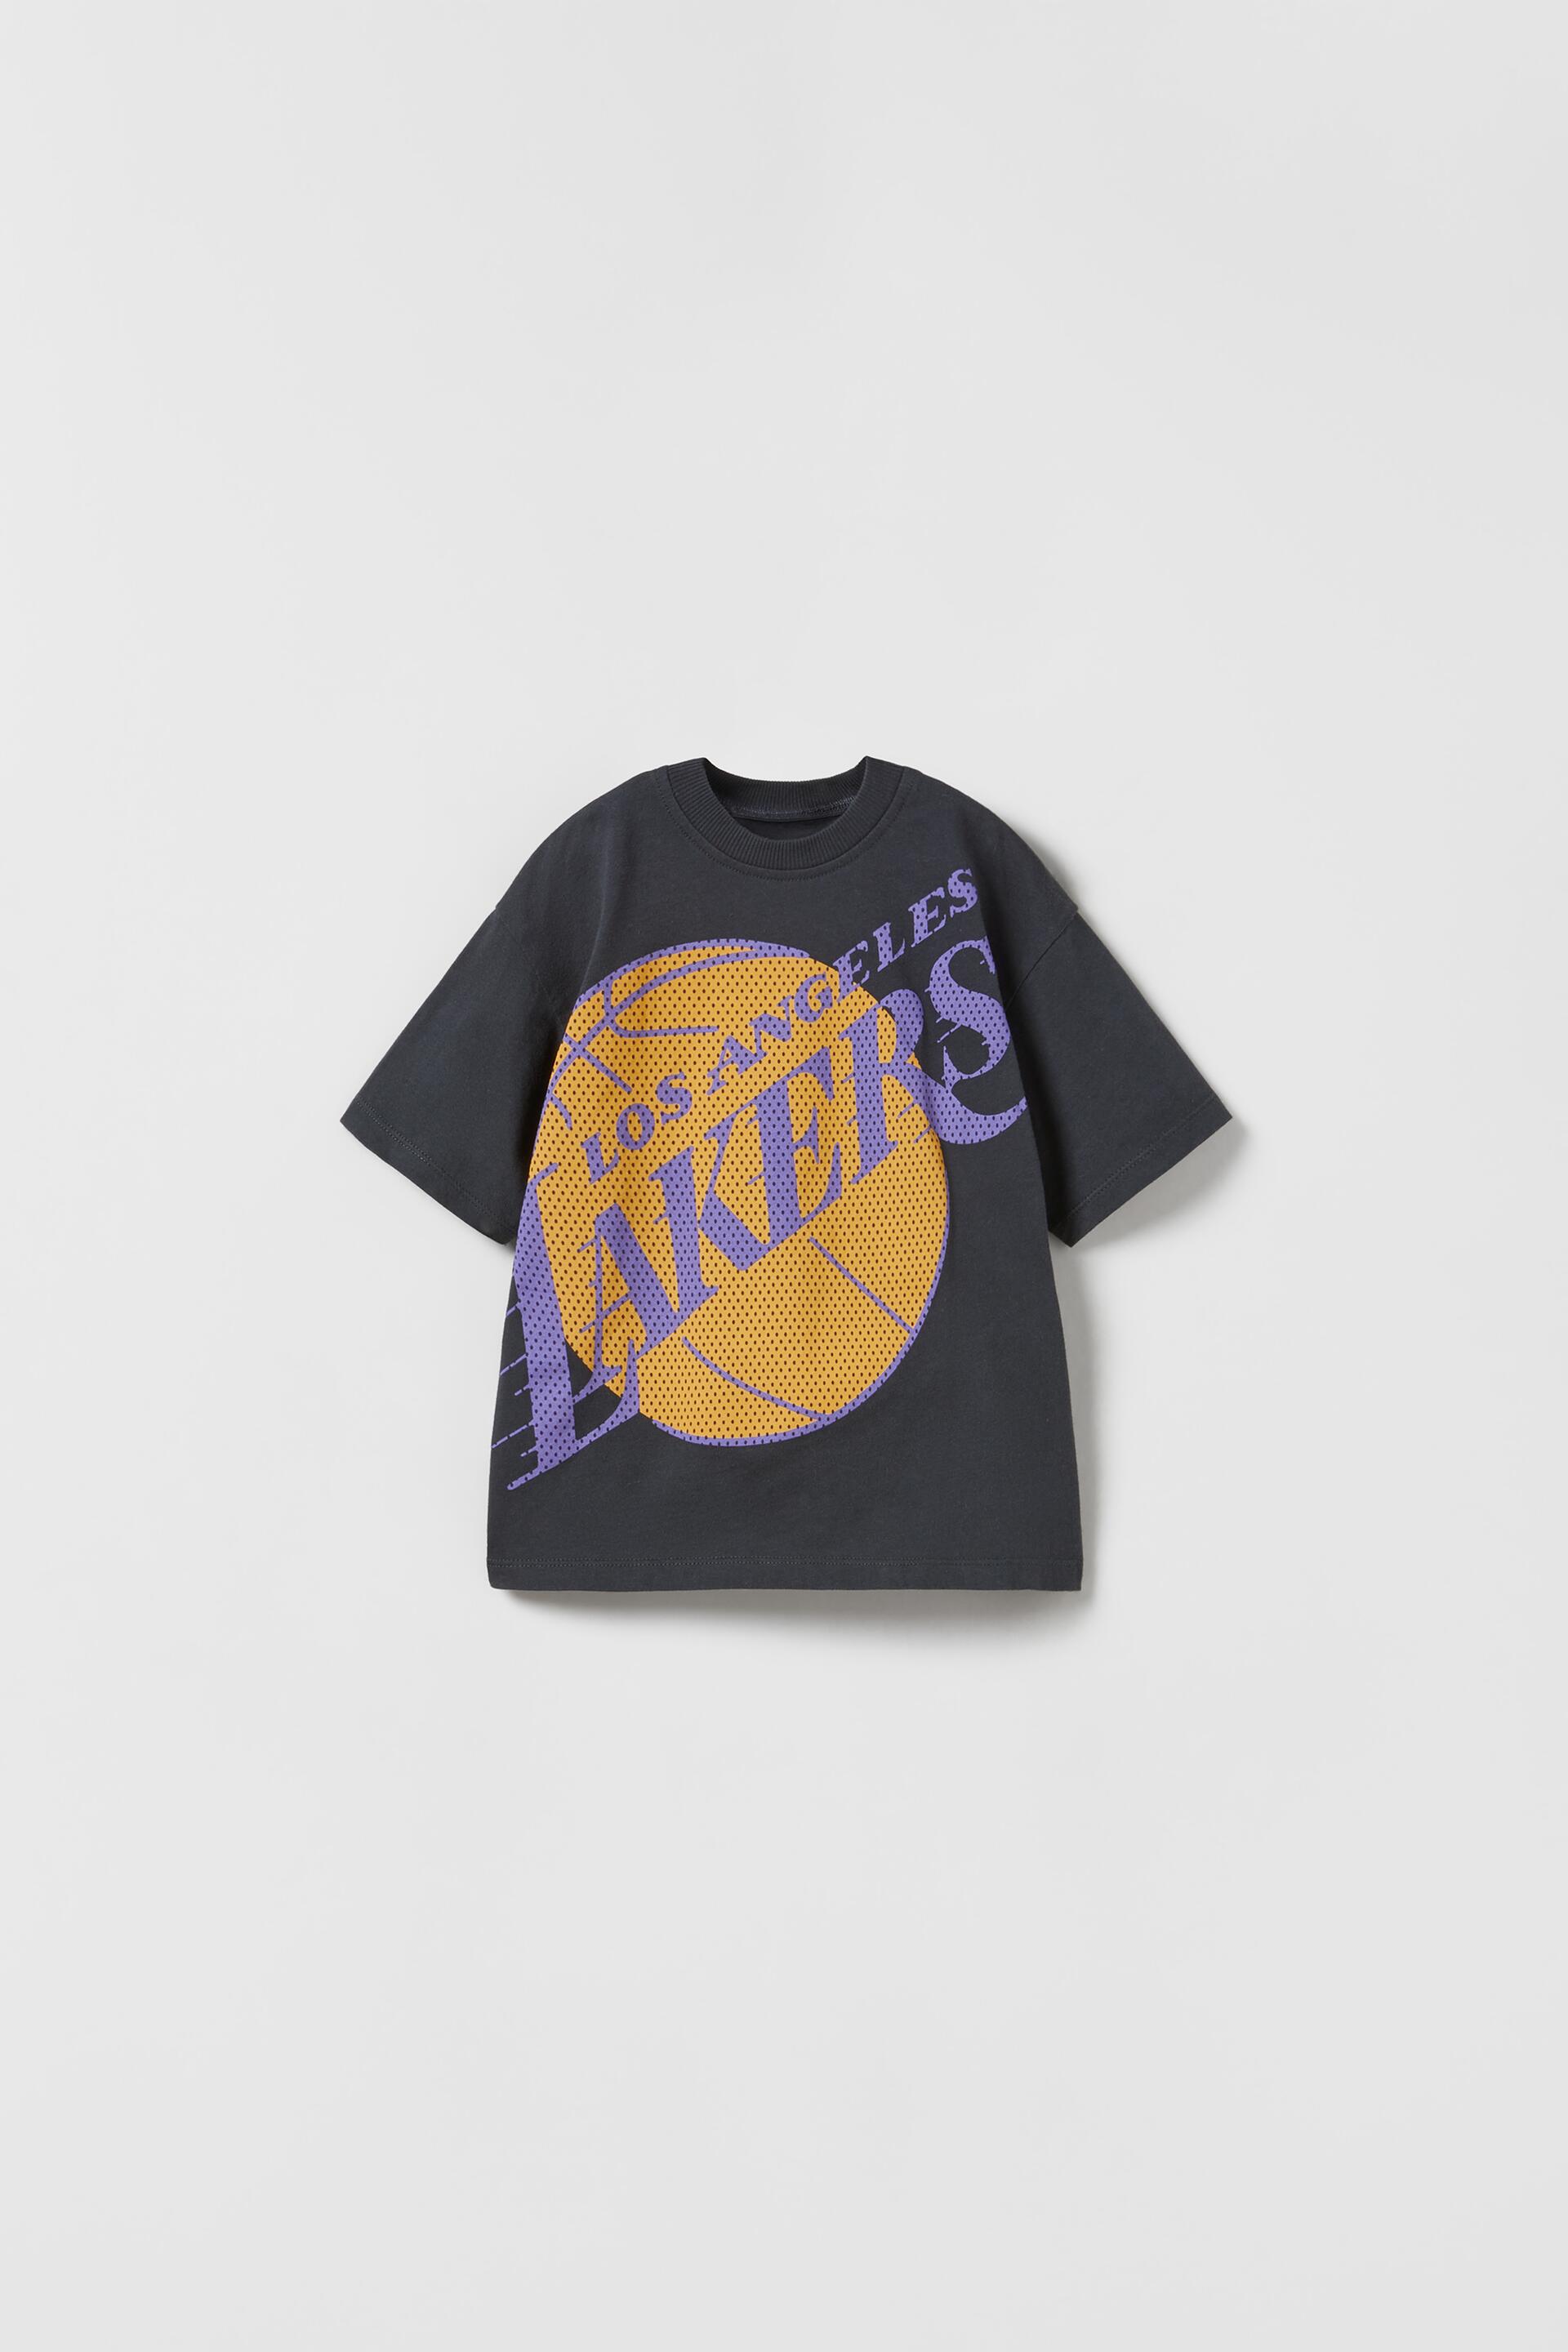 ZARA Lakers Nba™ T恤